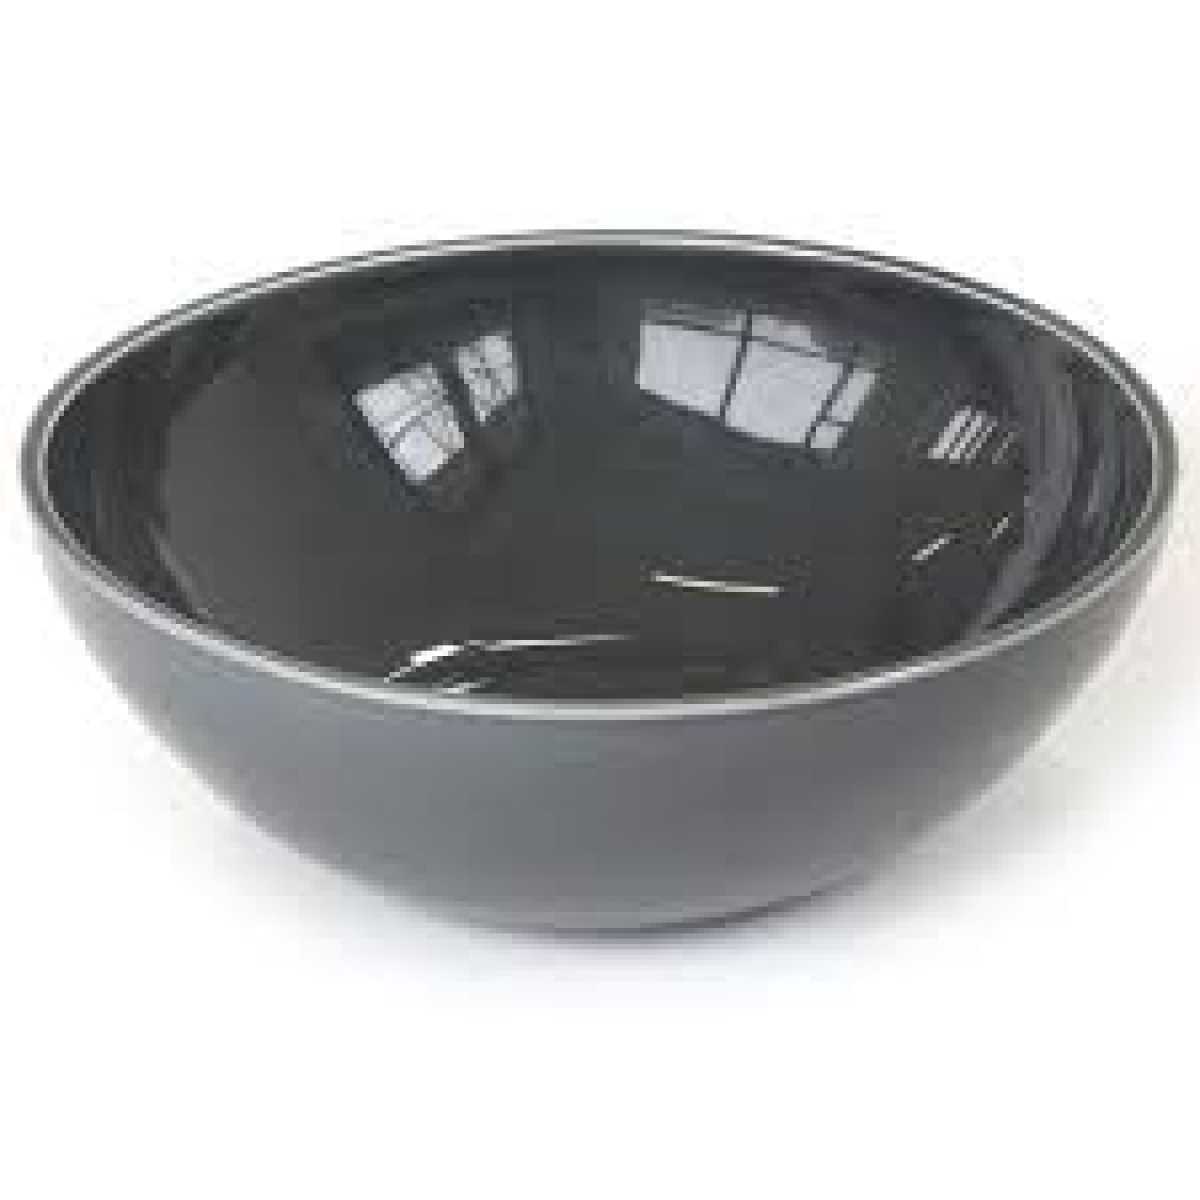 CRASTER Tilt Dark Grey Bowl – Medium